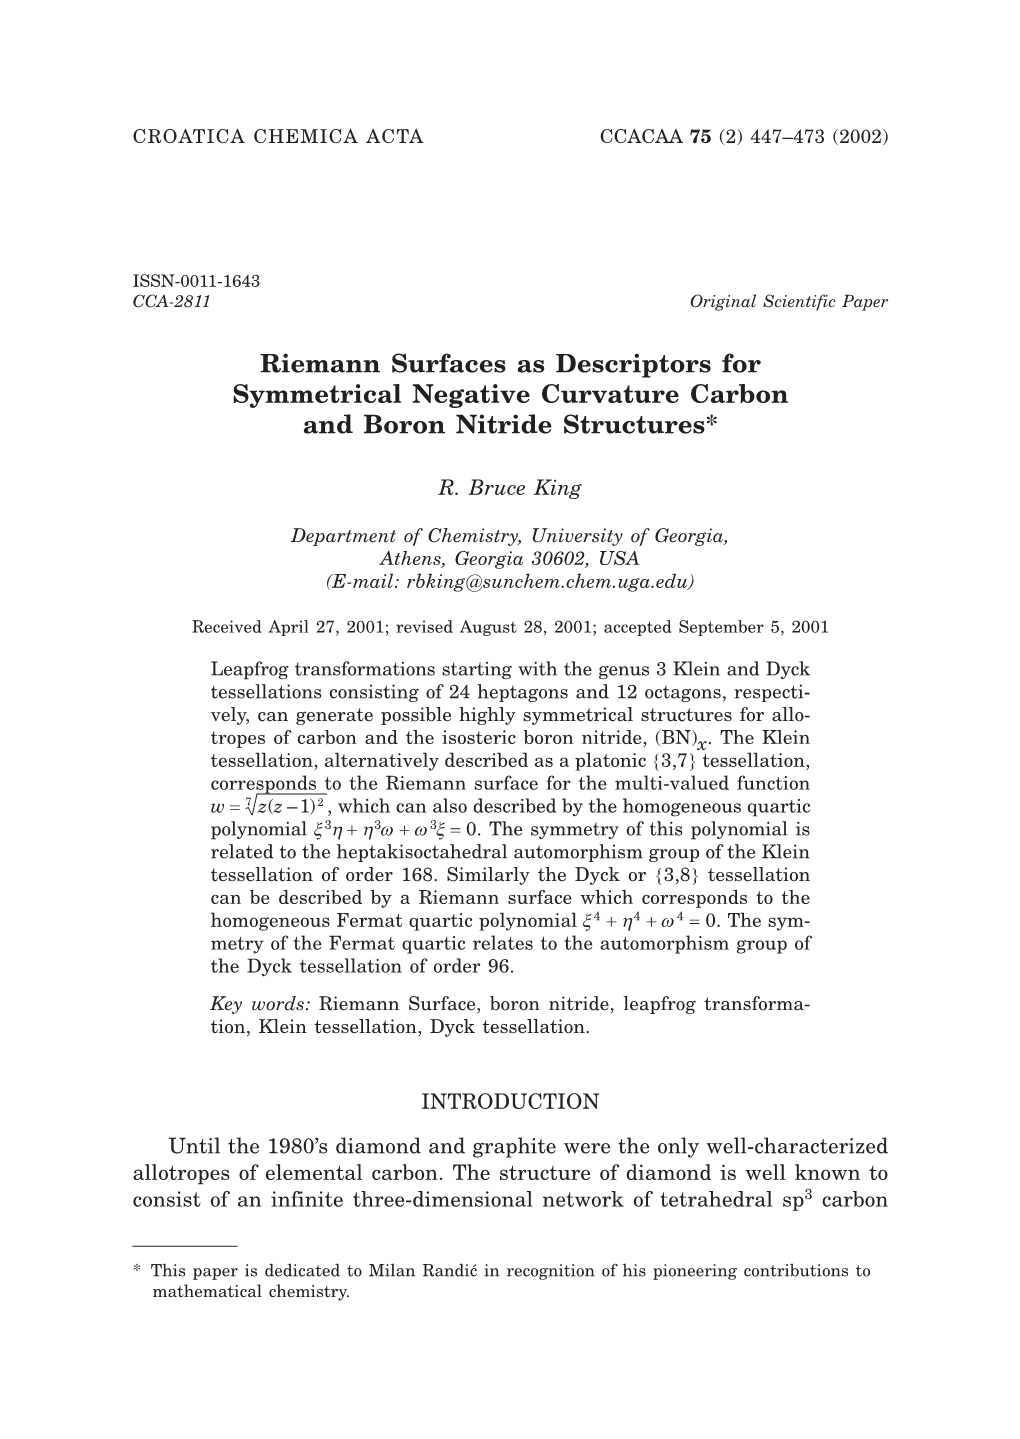 Riemann Surfaces As Descriptors for Symmetrical Negative Curvature Carbon and Boron Nitride Structures*